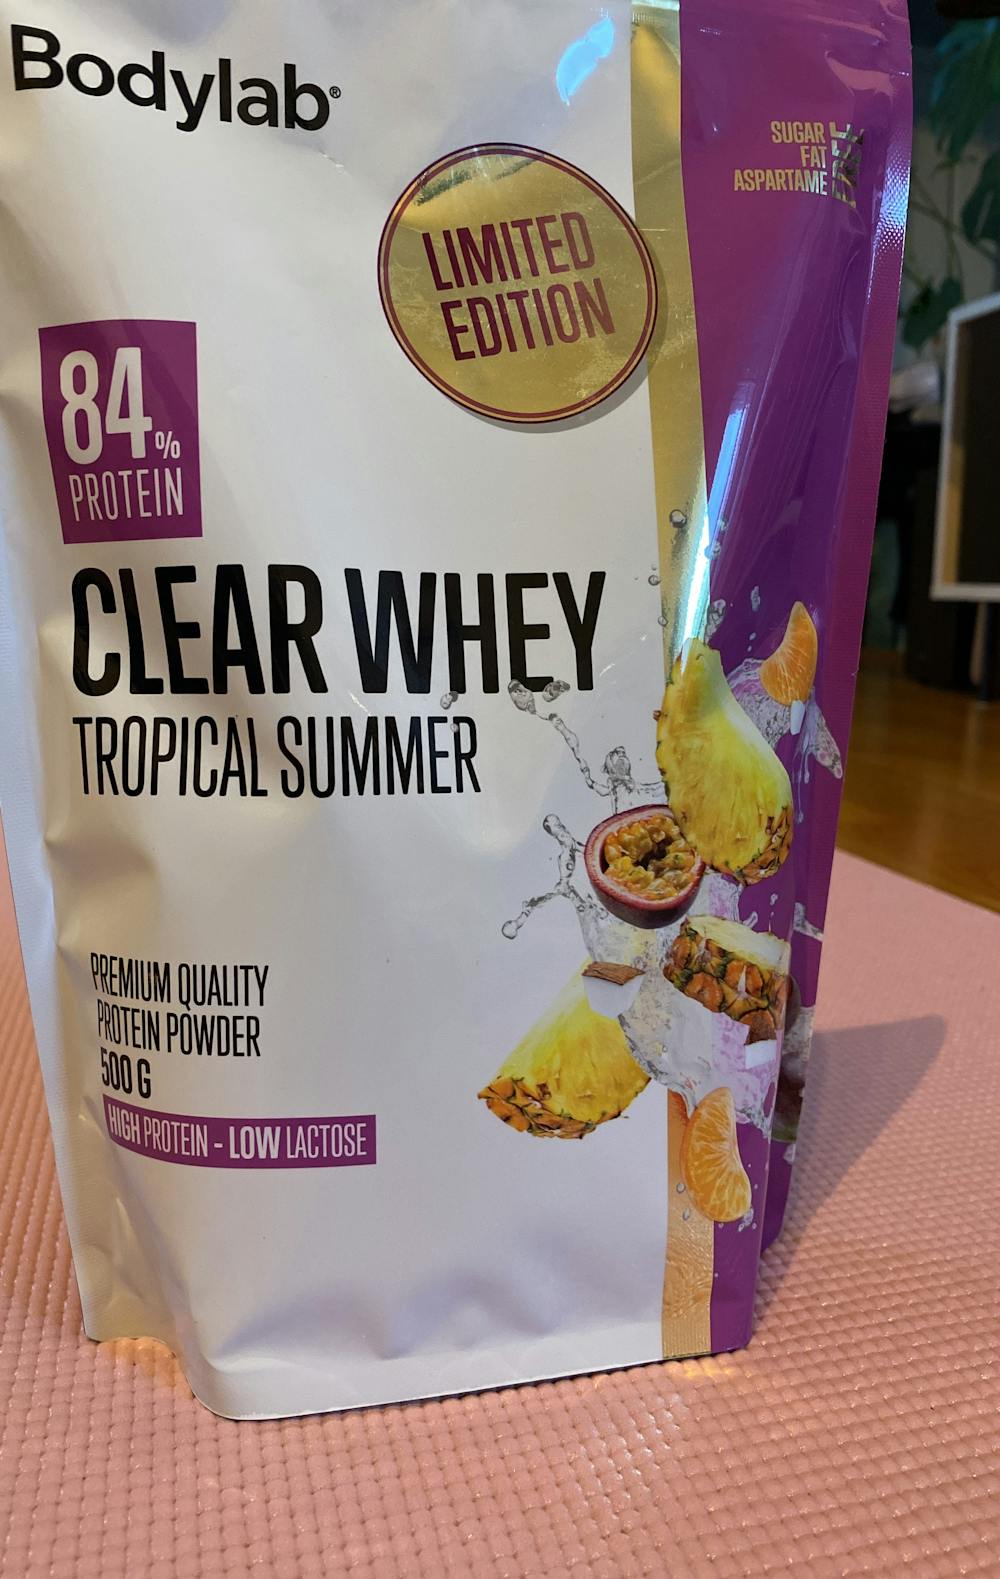 Clear whey, tropical summer, Bodylab